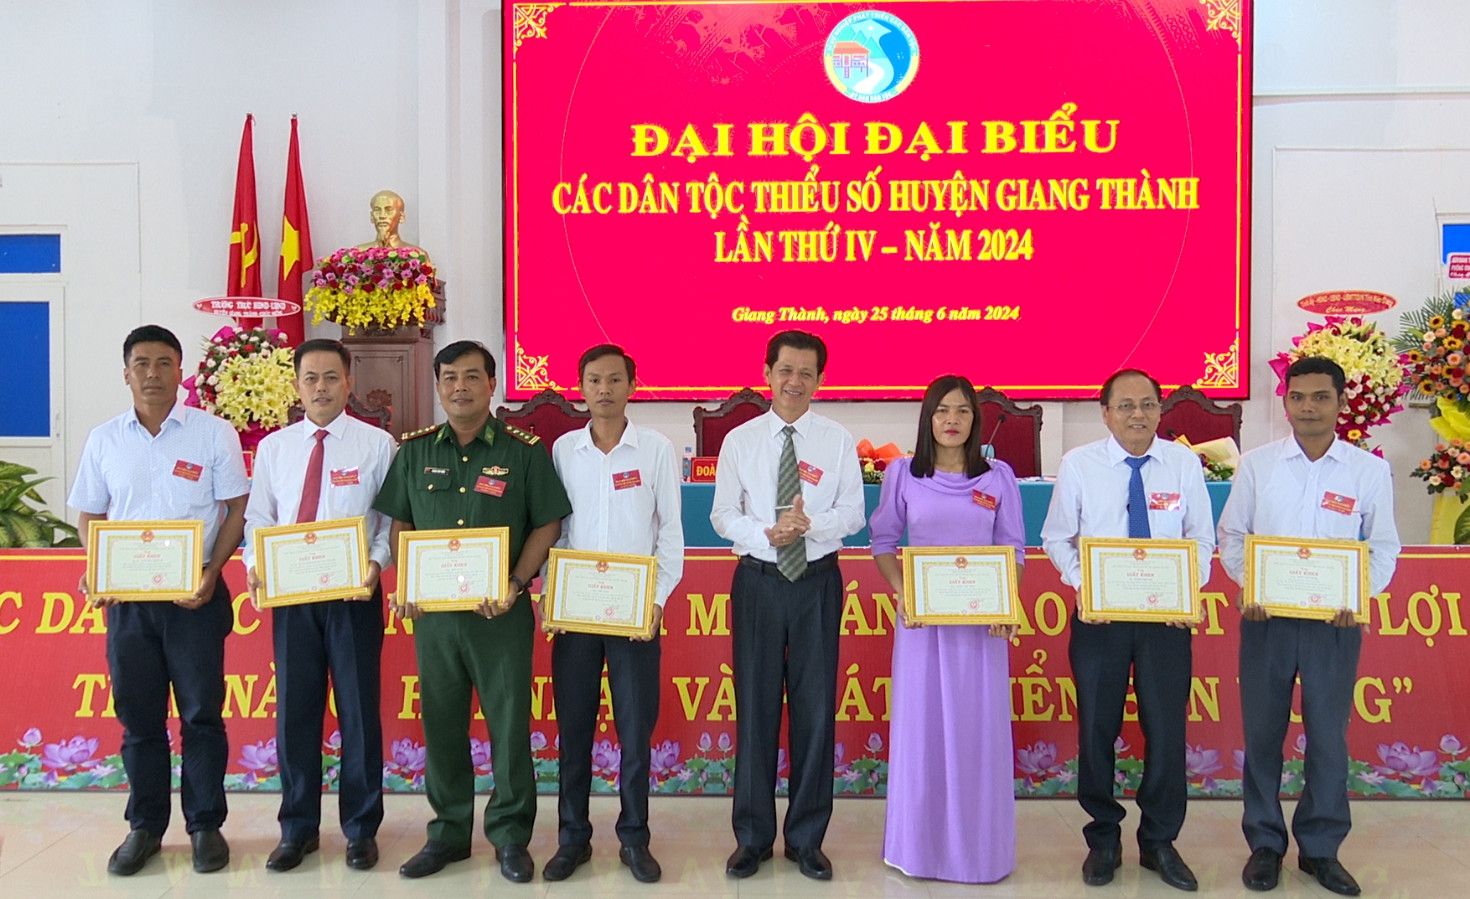 Phó Chủ tịch UBND huyện Giang Thành Huỳnh Trọng Đức trao giấy khen của UBND huyện Giang Thành cho các tập thể, cá nhân.